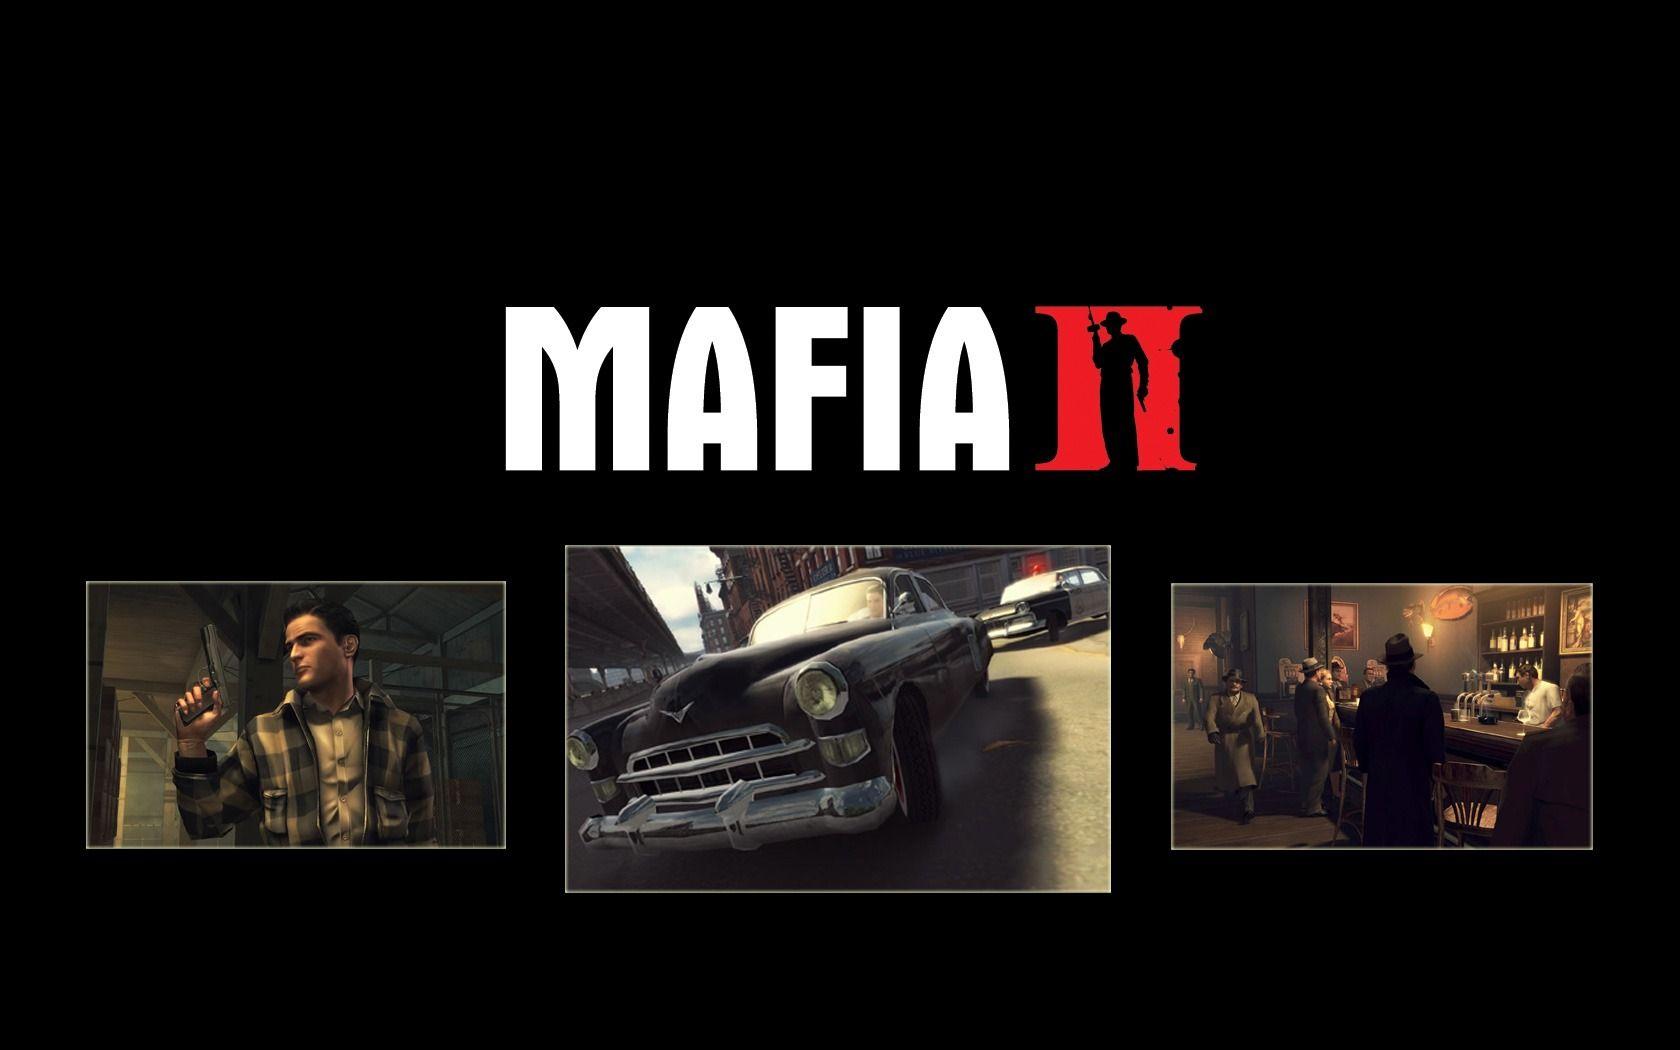 Mafia II Wallpaper Mafia 2 Games Wallpaper in jpg format for free